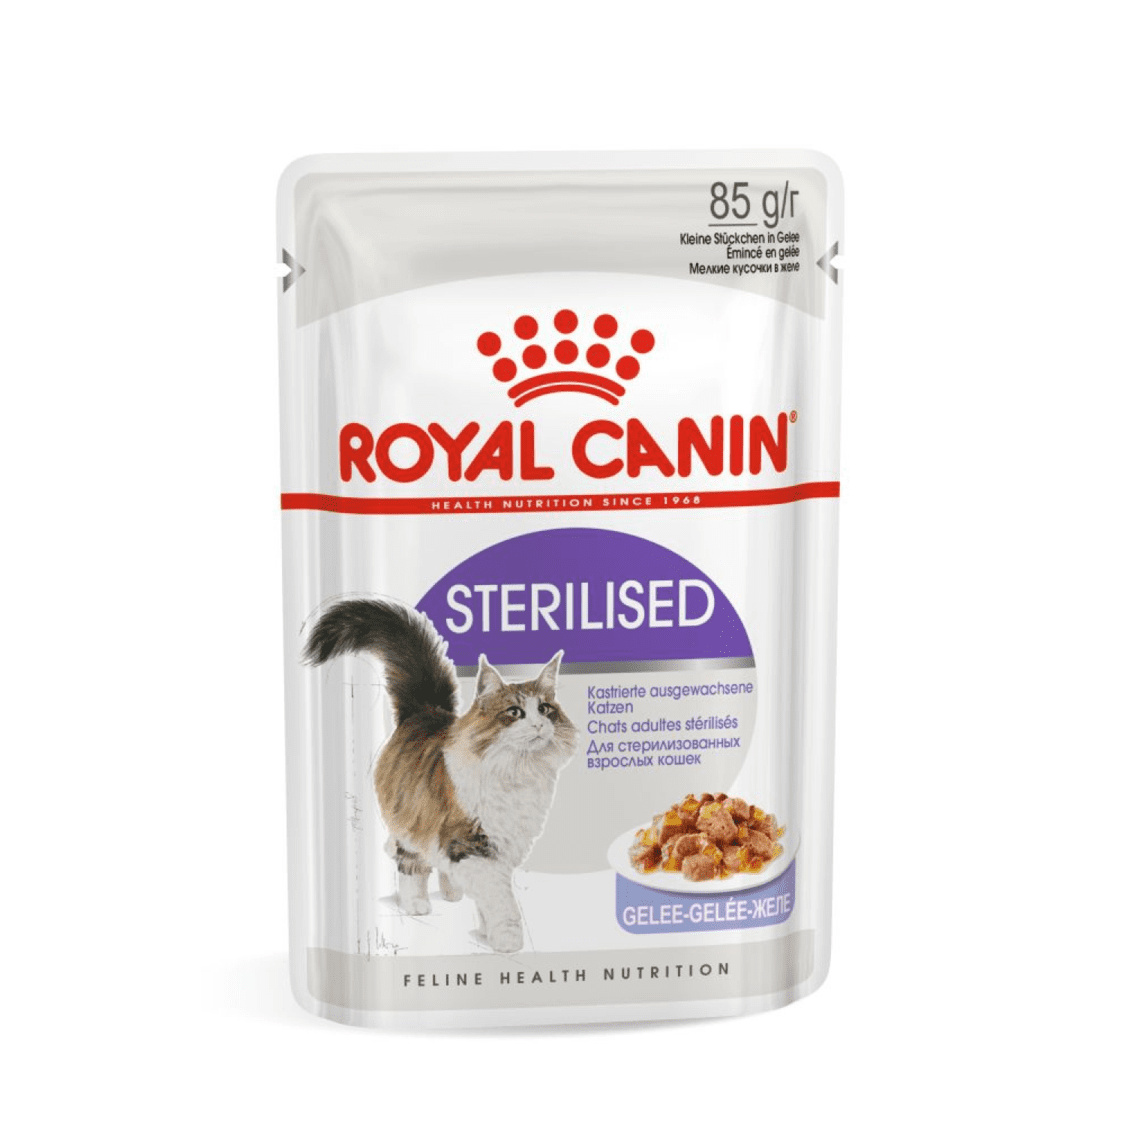 Royal Canin паучи Royal Canin паучи кусочки в желе для кастрированных кошек 1-7лет (28 шт.) royal canin паучи royal canin паучи кусочки в соусе для кошек 1 10 лет отличное пищеварение 28 шт